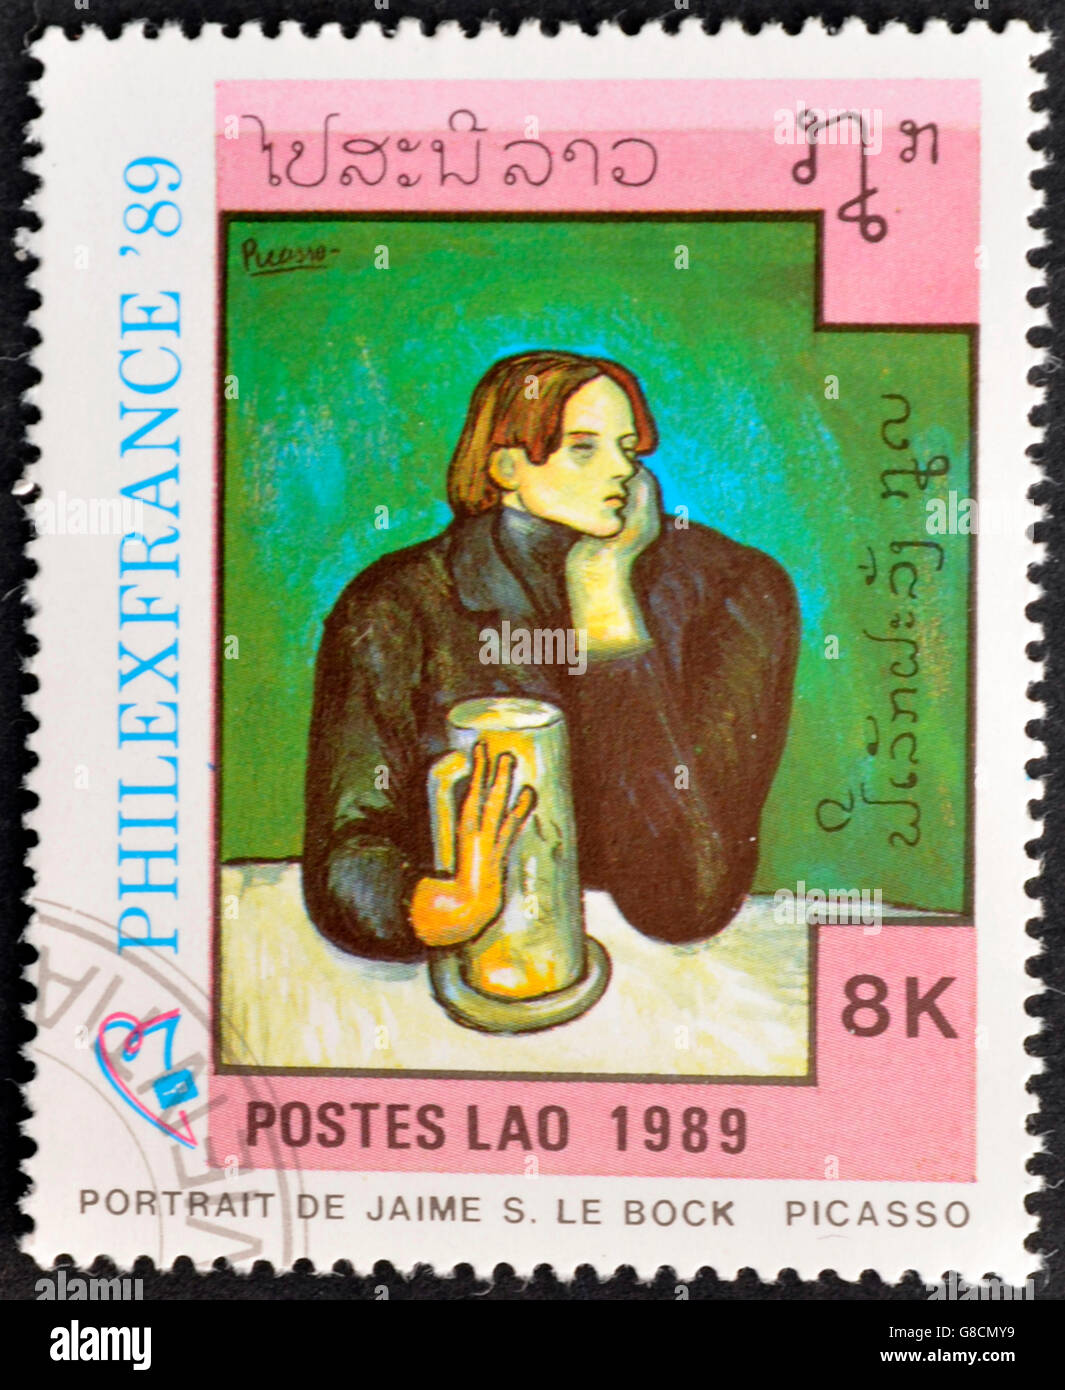 LAOS-VERS 1989 : timbre imprimé dans le Laos montre peinture 'portrait de Jaime S. Le Bock' de Pablo Picasso, vers 1989 Banque D'Images